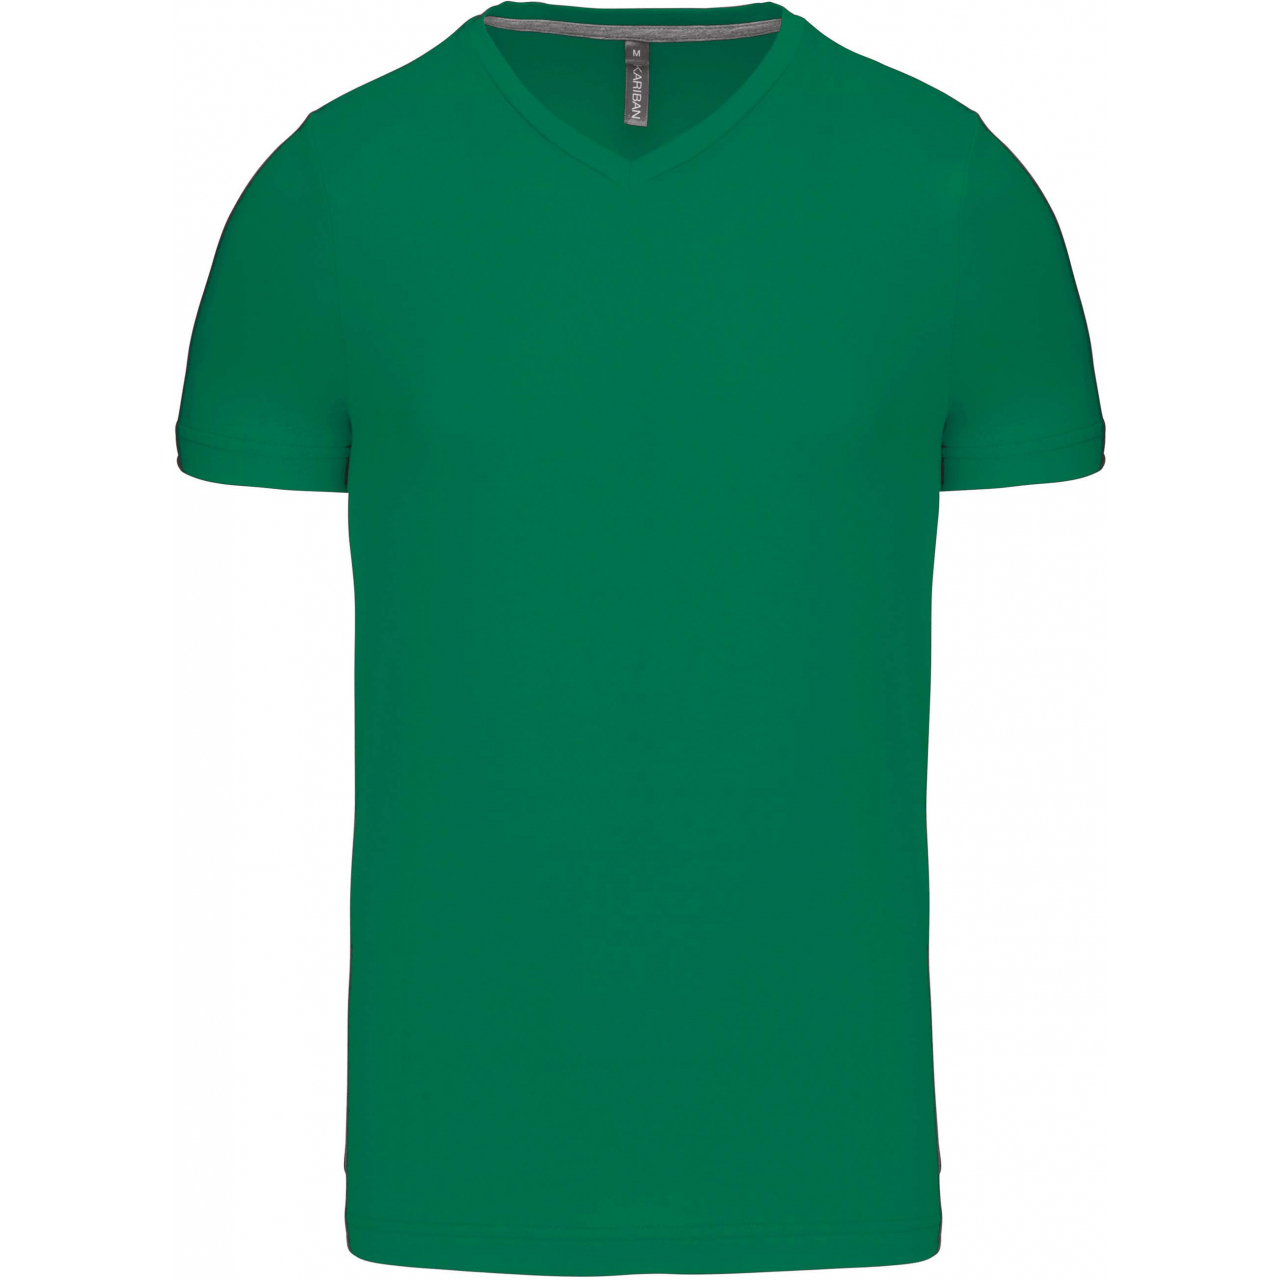 Pánské tričko Kariban krátký rukáv V-neck - zelené, S